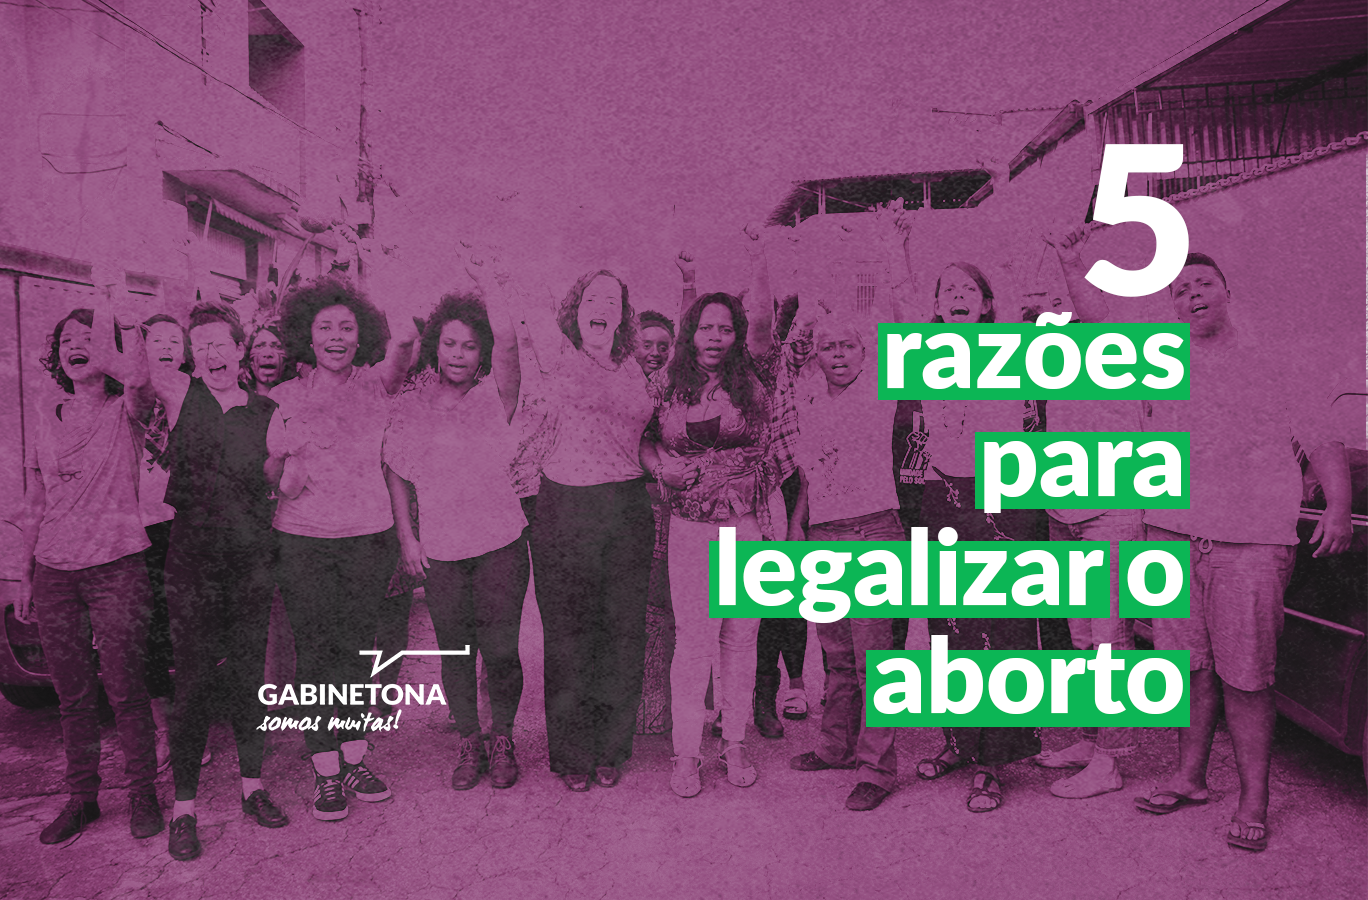 Legalização do aborto contradiz princípios de uma sociedade